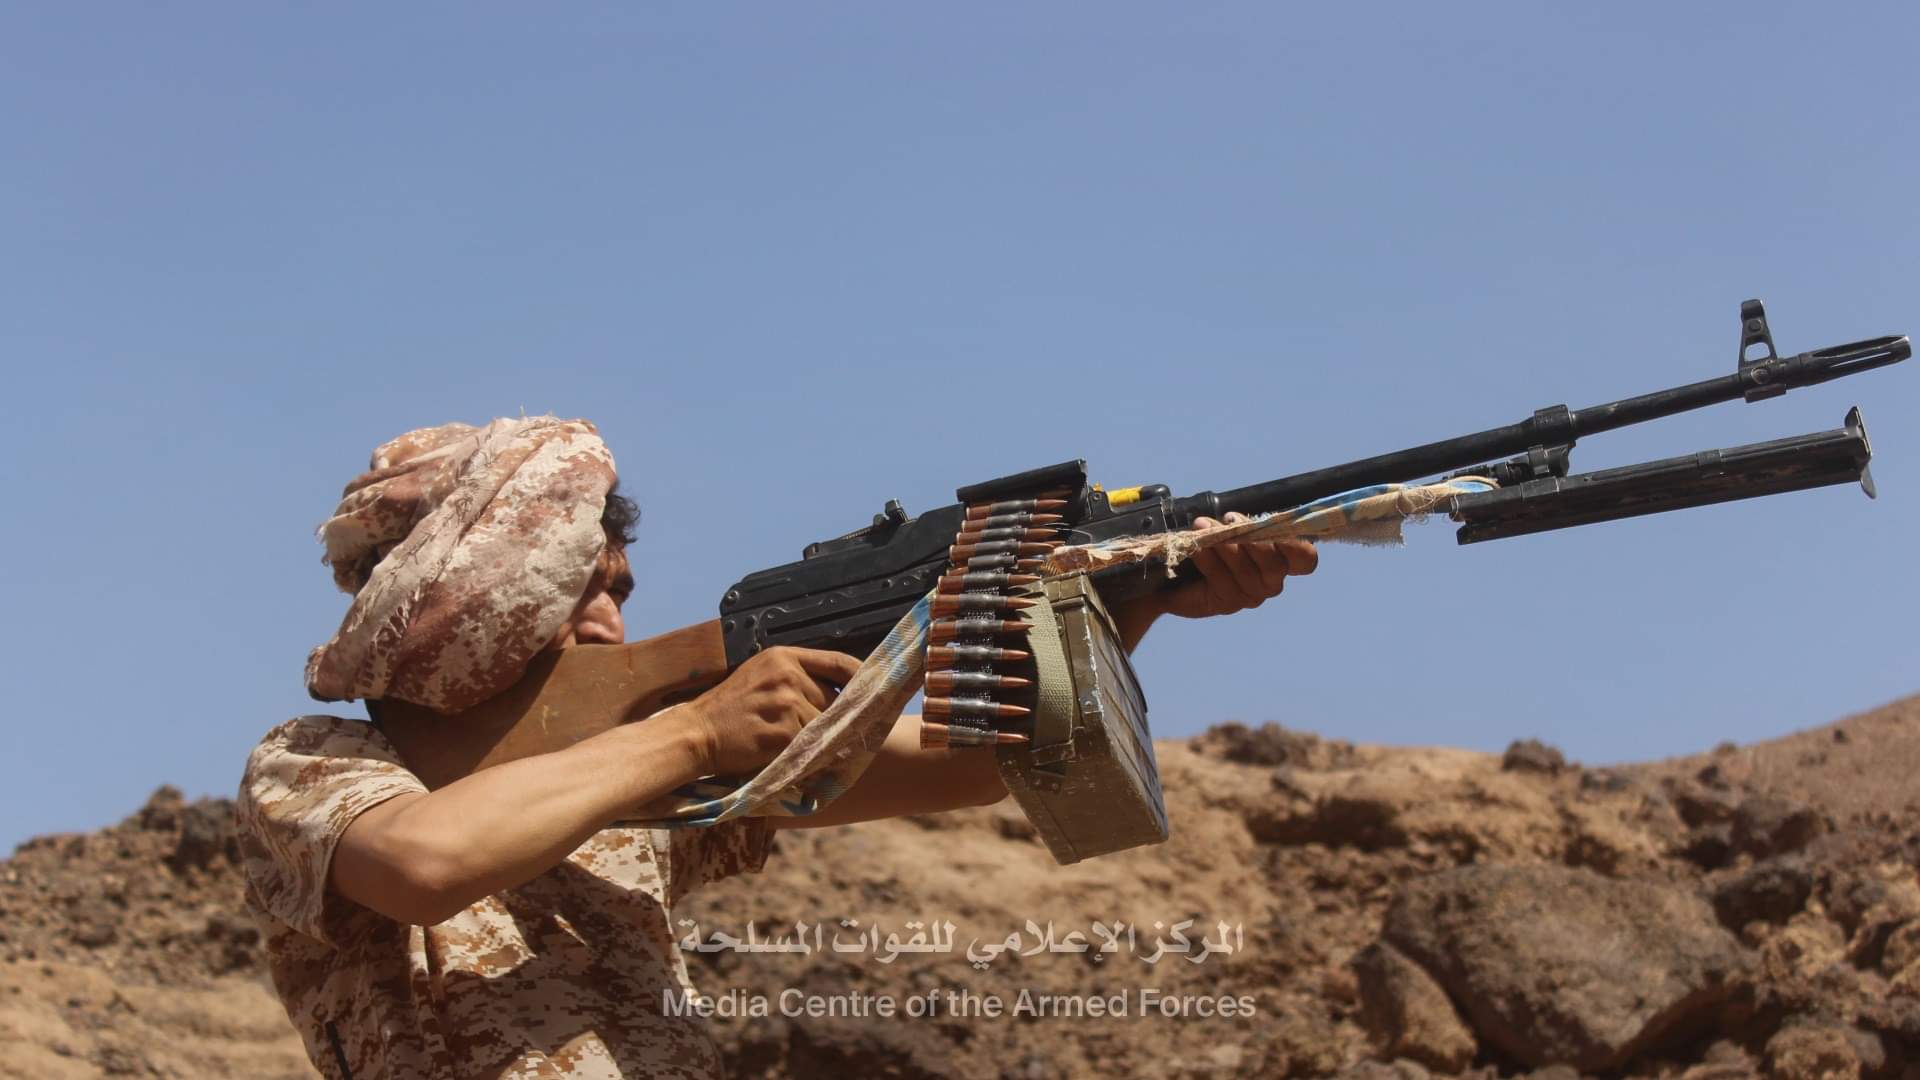 الإعلان عن السيطرة على مركز قيادة المليشيا الحوثية وغرفة الاتصالات التابعة لها في الجوف